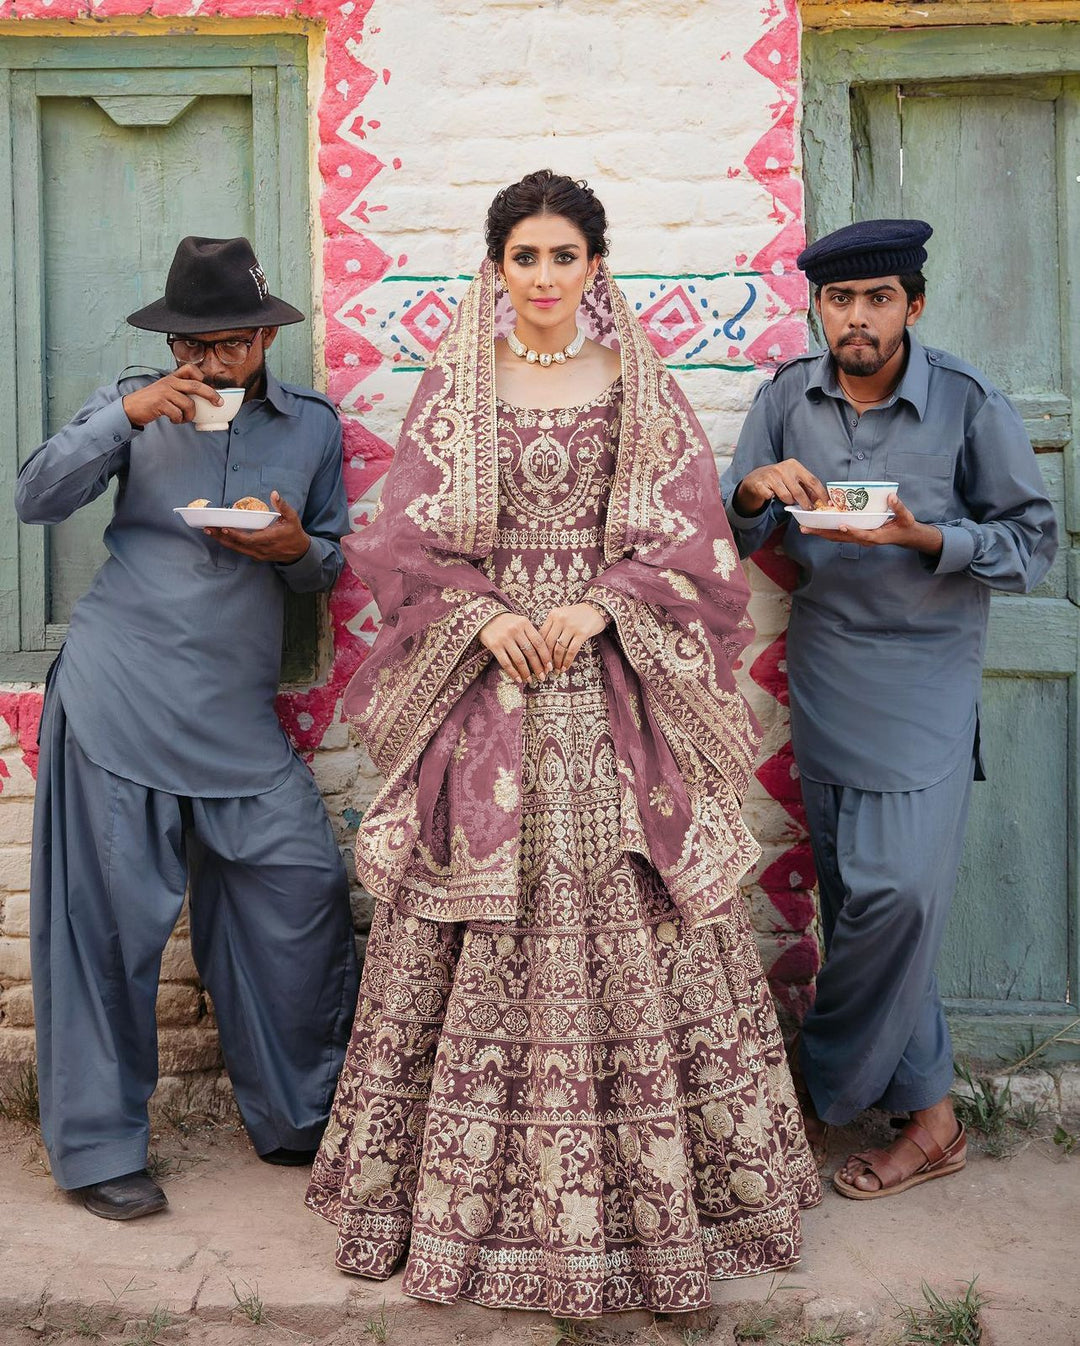 Bridal Heavy Embroidered Anarkali Set - Rent